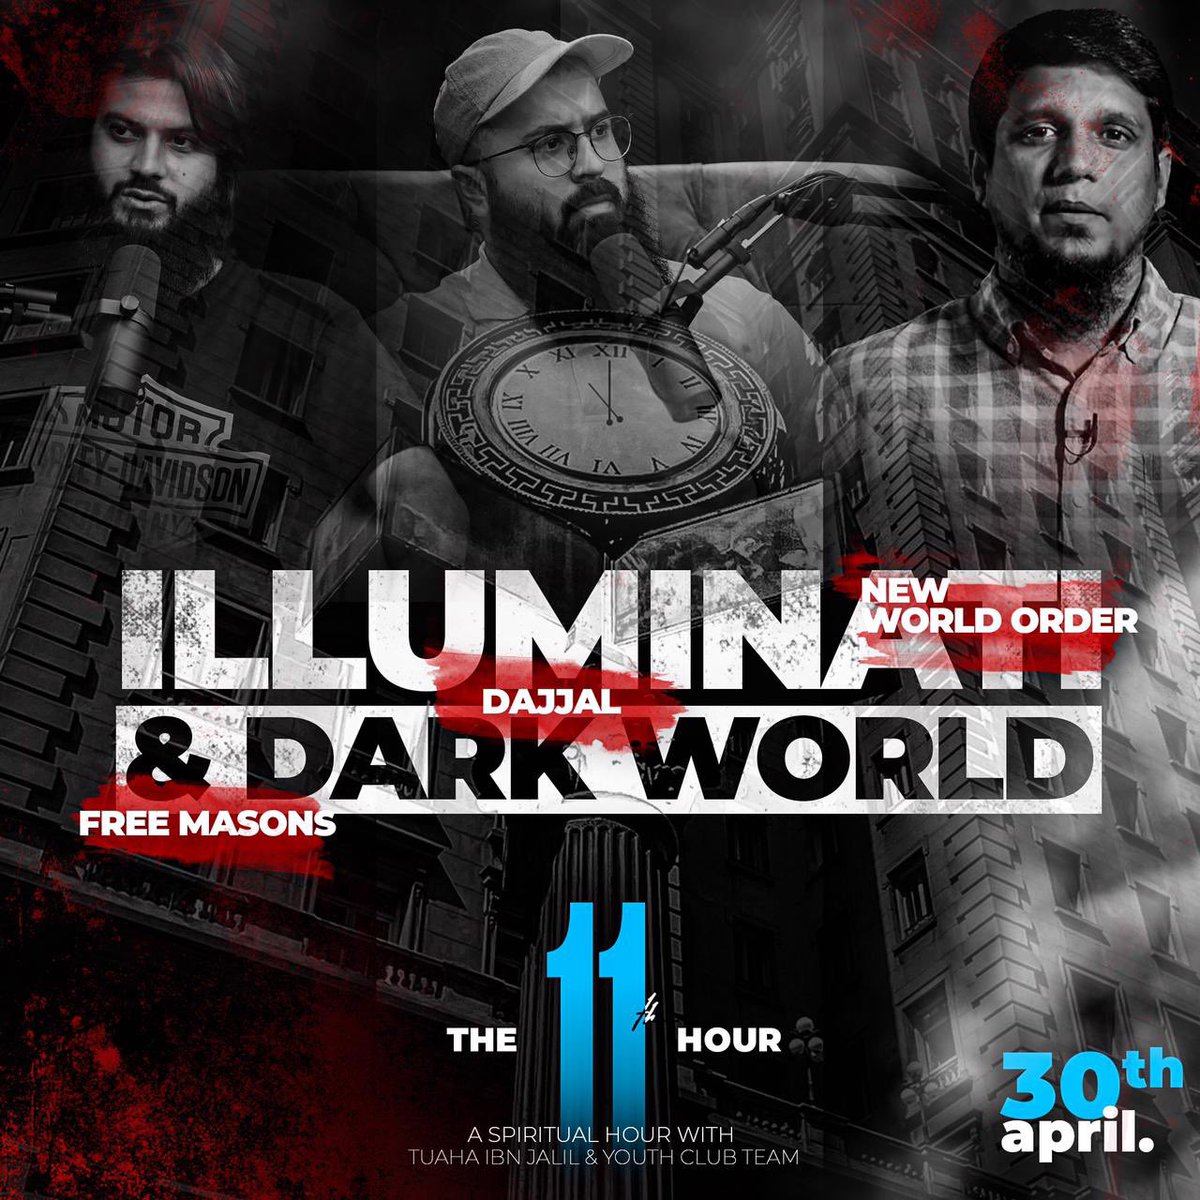 Youth Club Illuminati Amp Dark World With Tuaha Ibn Jalil Ft Ali E Amp Muhammad Ali Daily At 11pm Live Via T Co 6crisv8b7x T Co Yuum1yy3nt 11thhour Podcast T Co Kxkl0tmzvg Twitter